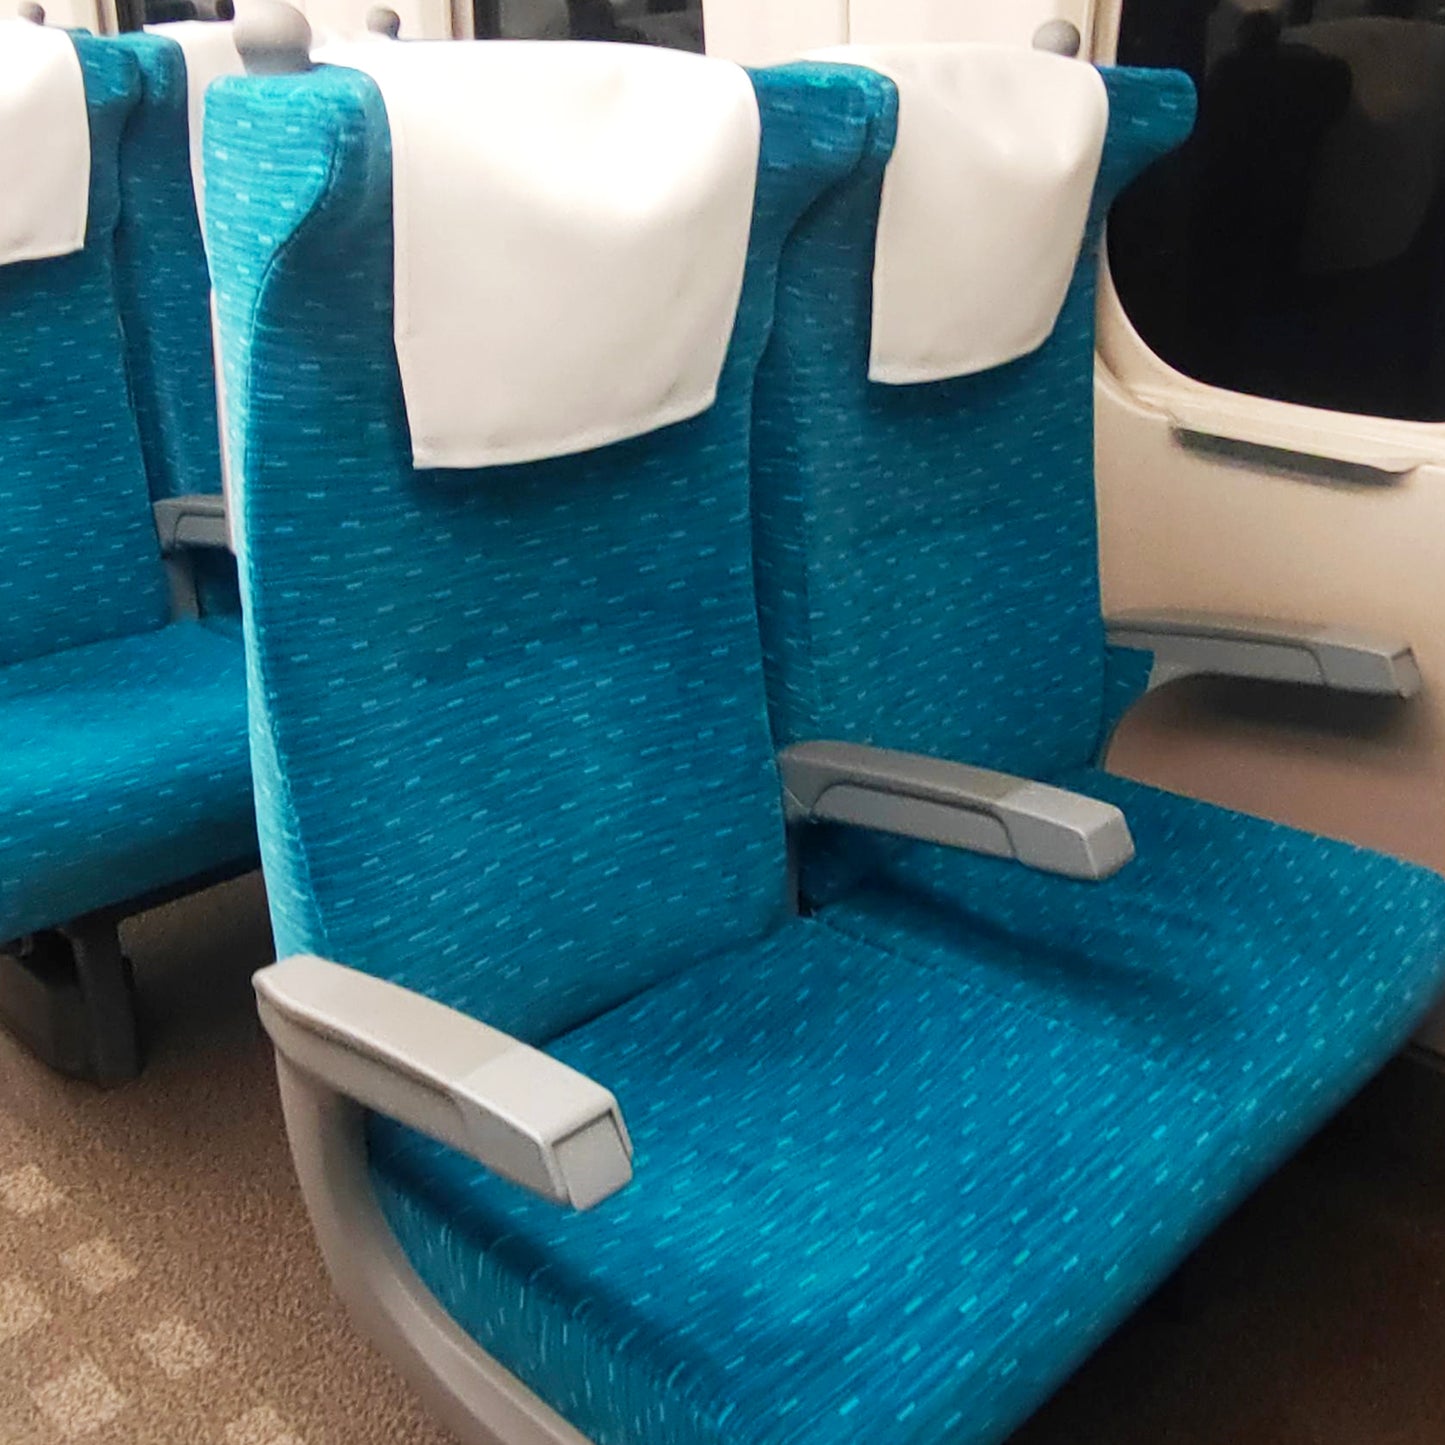 N700A東海道新幹線モケットウエストバッグの本体素材には、N700A東海道新幹線の座席から取り出された生地を採用しています。